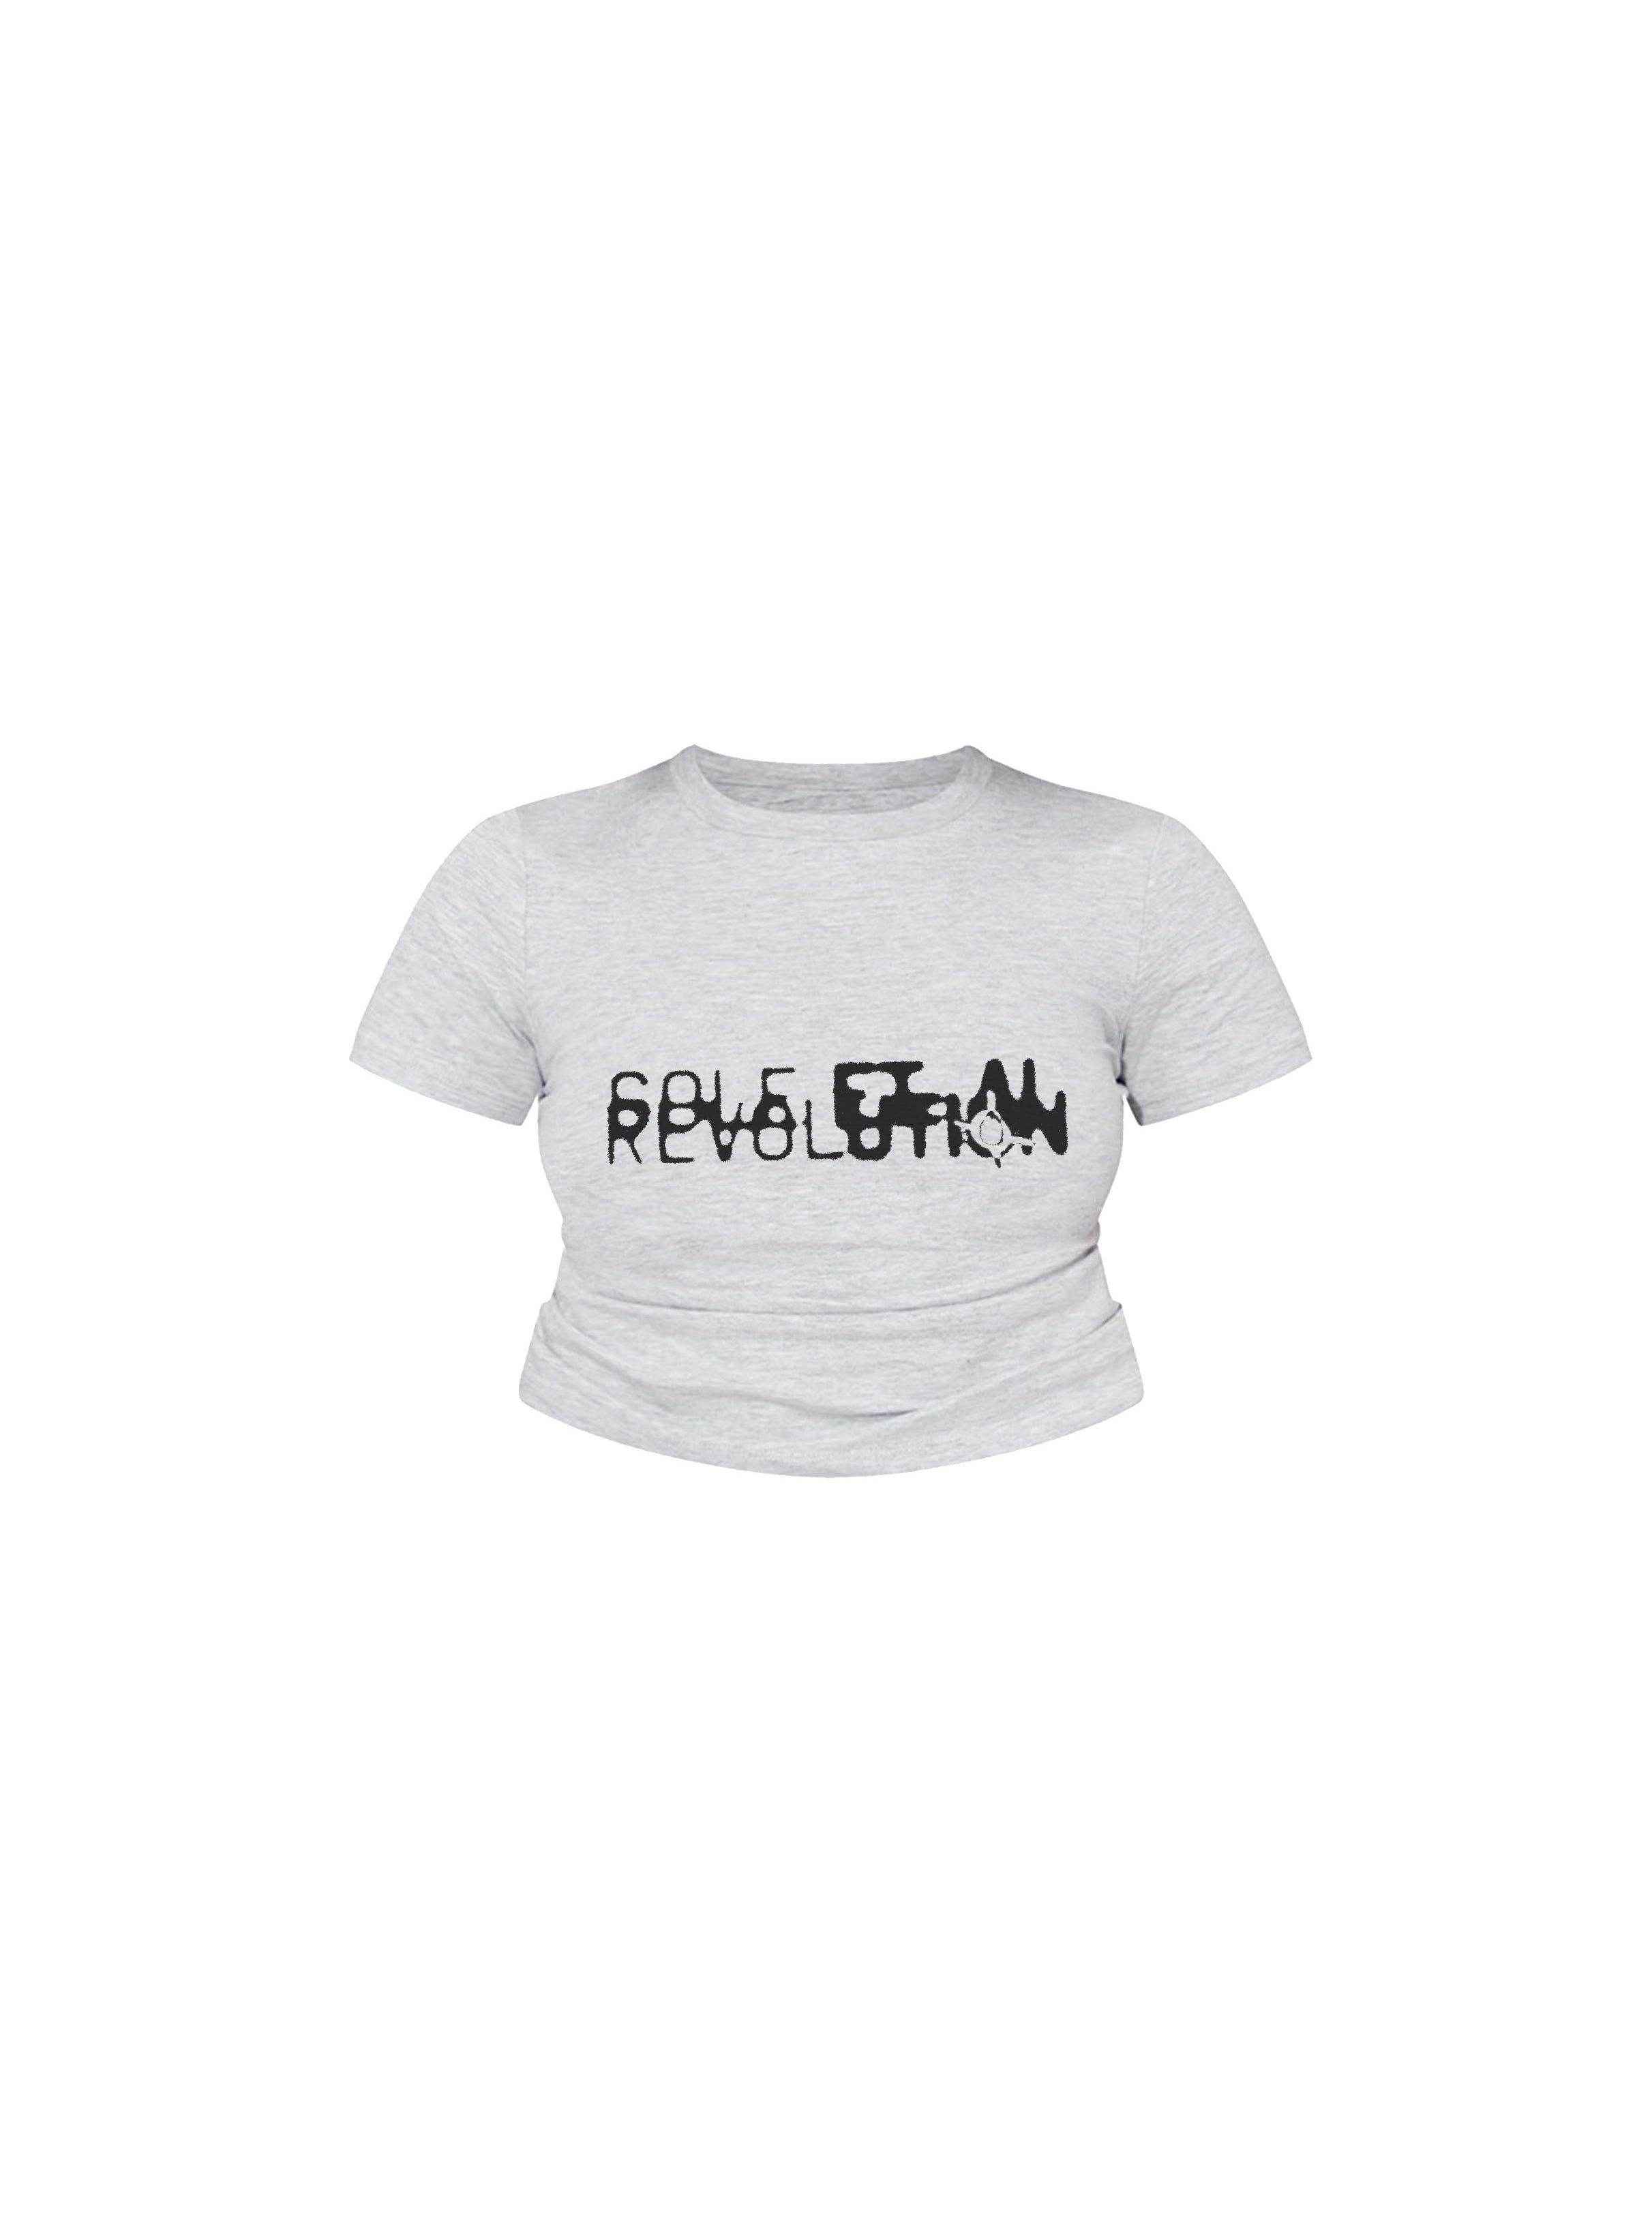 Sole et.Al Women's Revølutiøn Baby Cropped Tee : Grey / Black